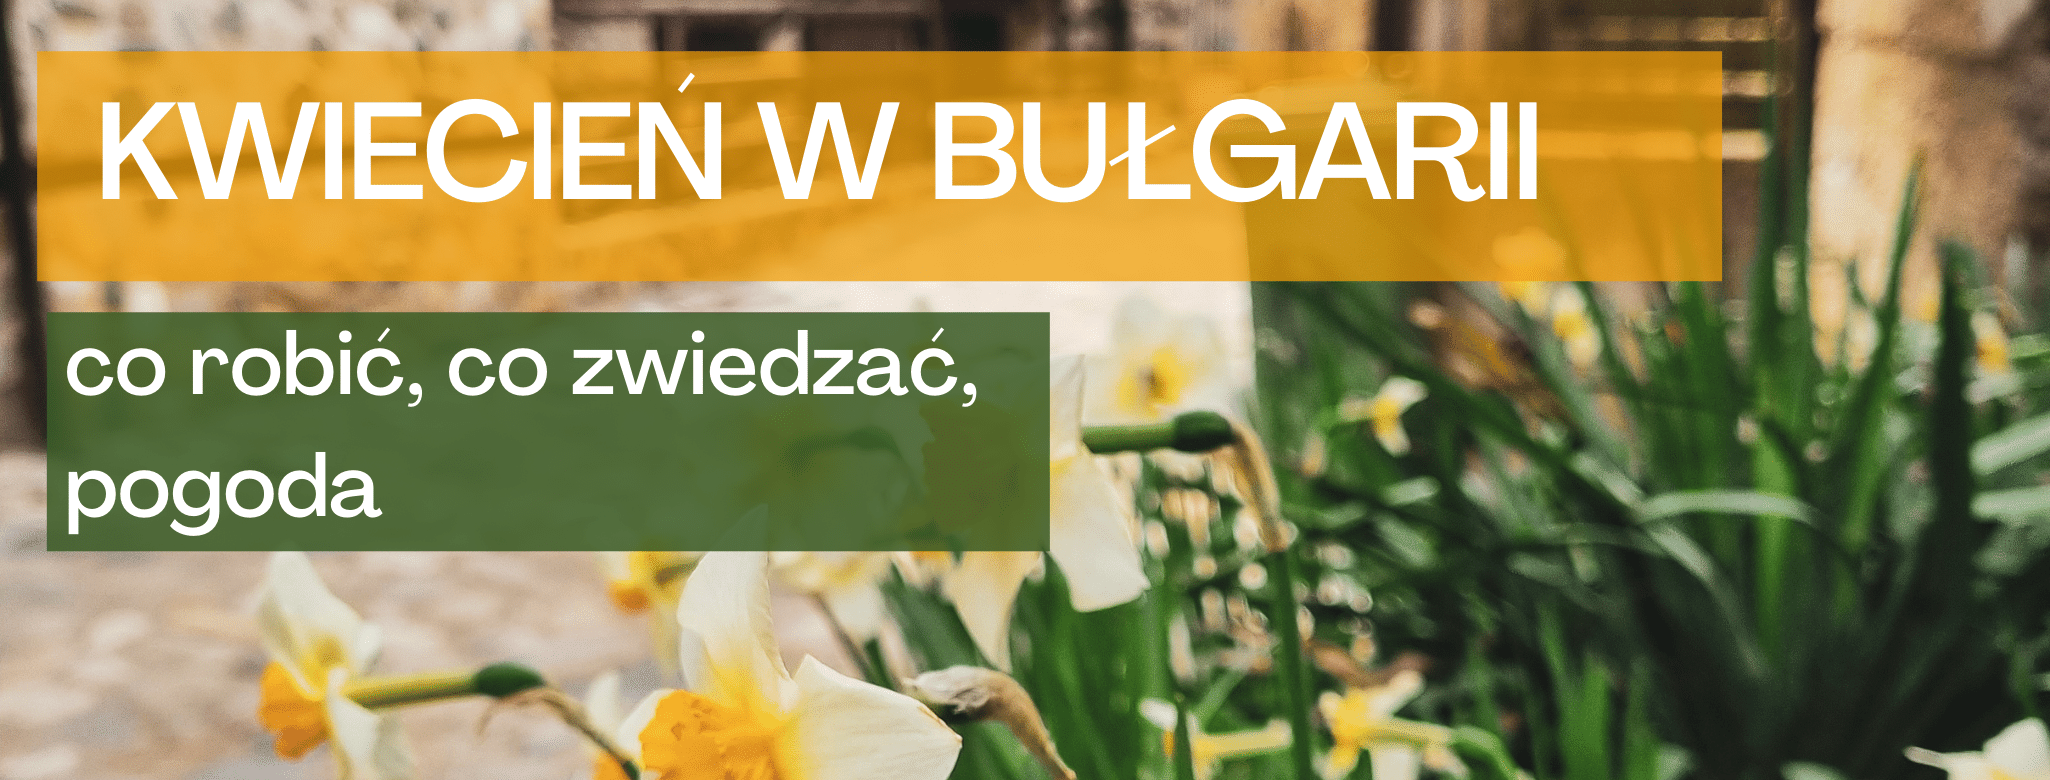 bulgaria_kwiecien